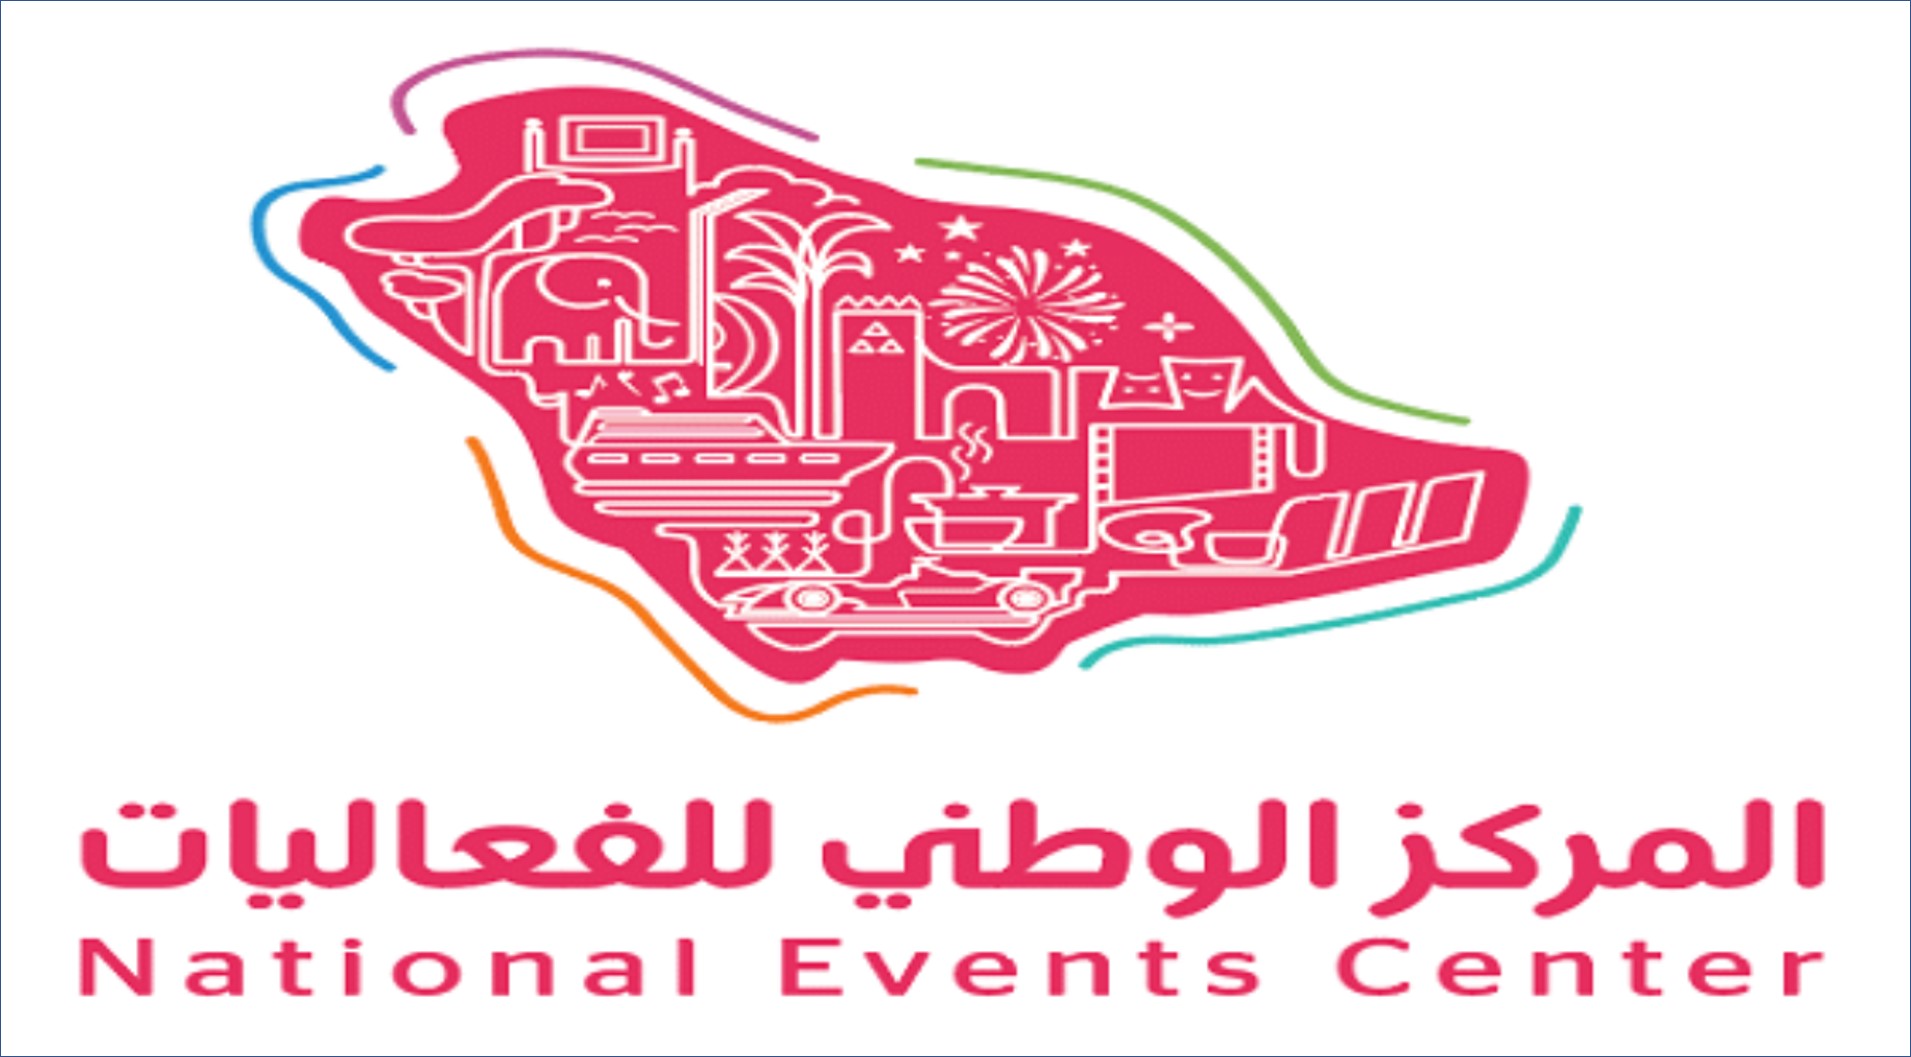 المركز الوطني للفعاليات بالسعودية يقدم وظائف جديدة للرجال والنساء